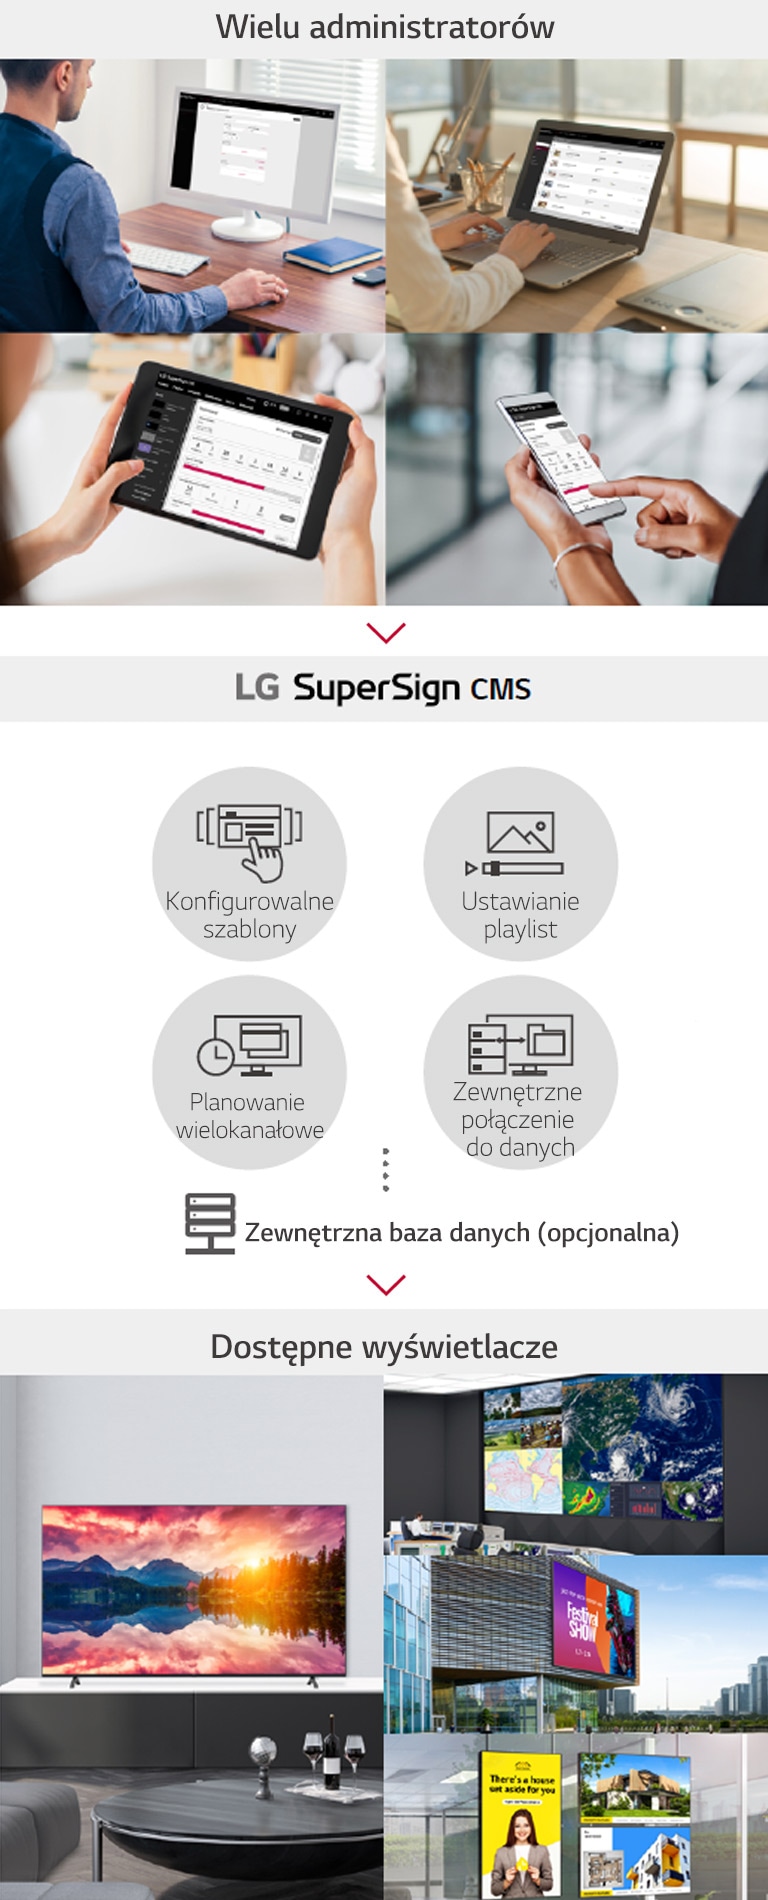 Wielu administratorów może uzyskać dostęp do LG SuperSign CMS przez komputer stacjonarny, laptop, tablet, a także urządzenia mobilne, aby tworzyć, regulować i rozpowszechniać cyfrowe treści medialne dostosowane do szerokiej gamy wyświetlaczy.